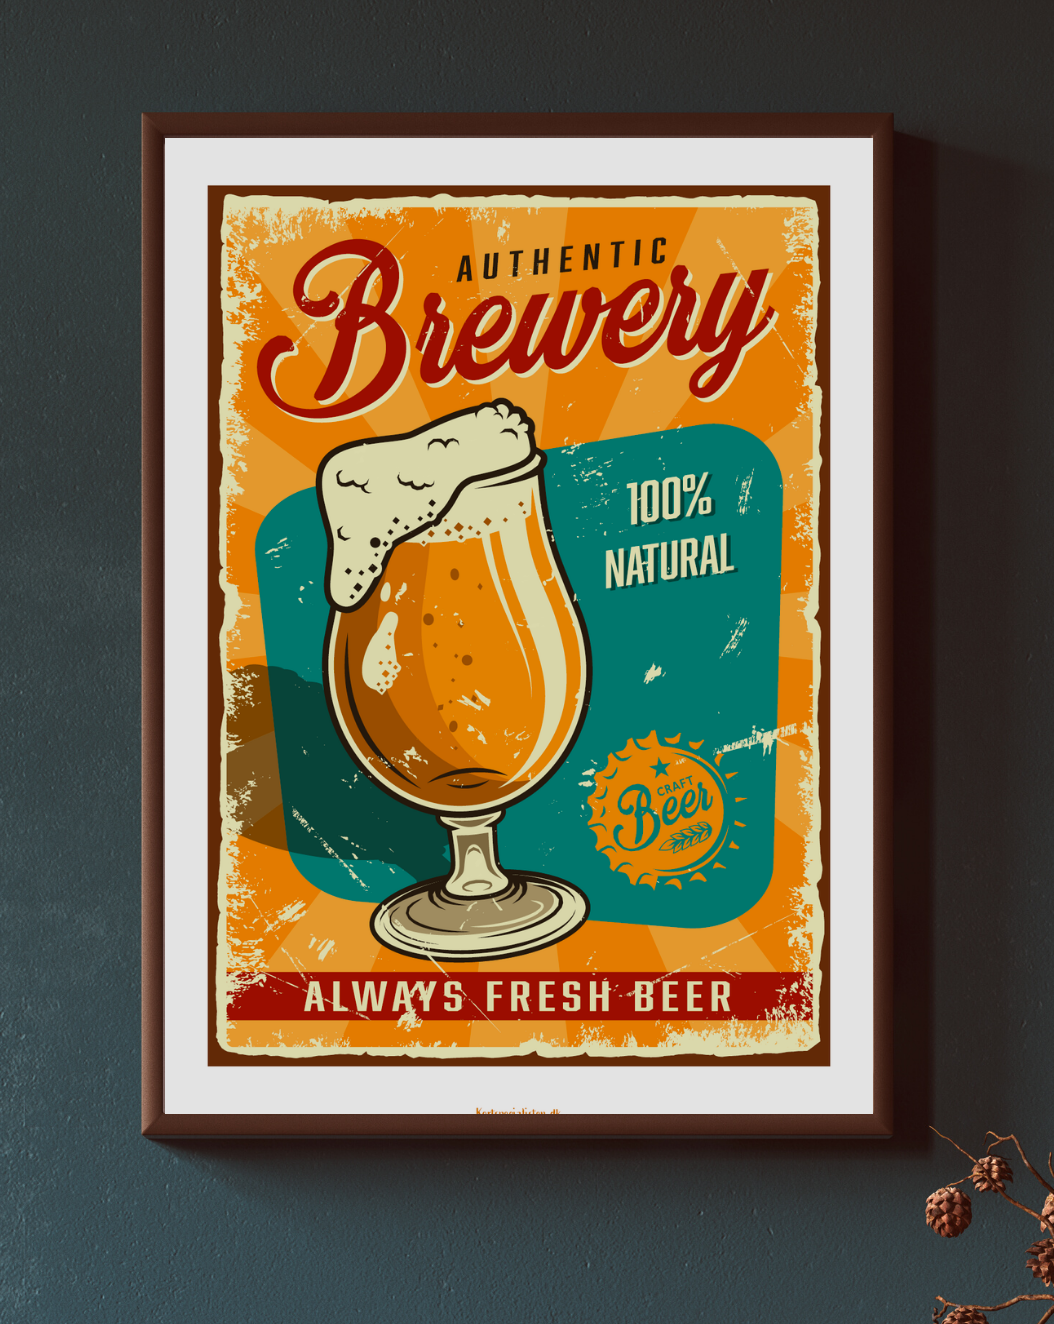 Vintage Beer - Authentic brewery